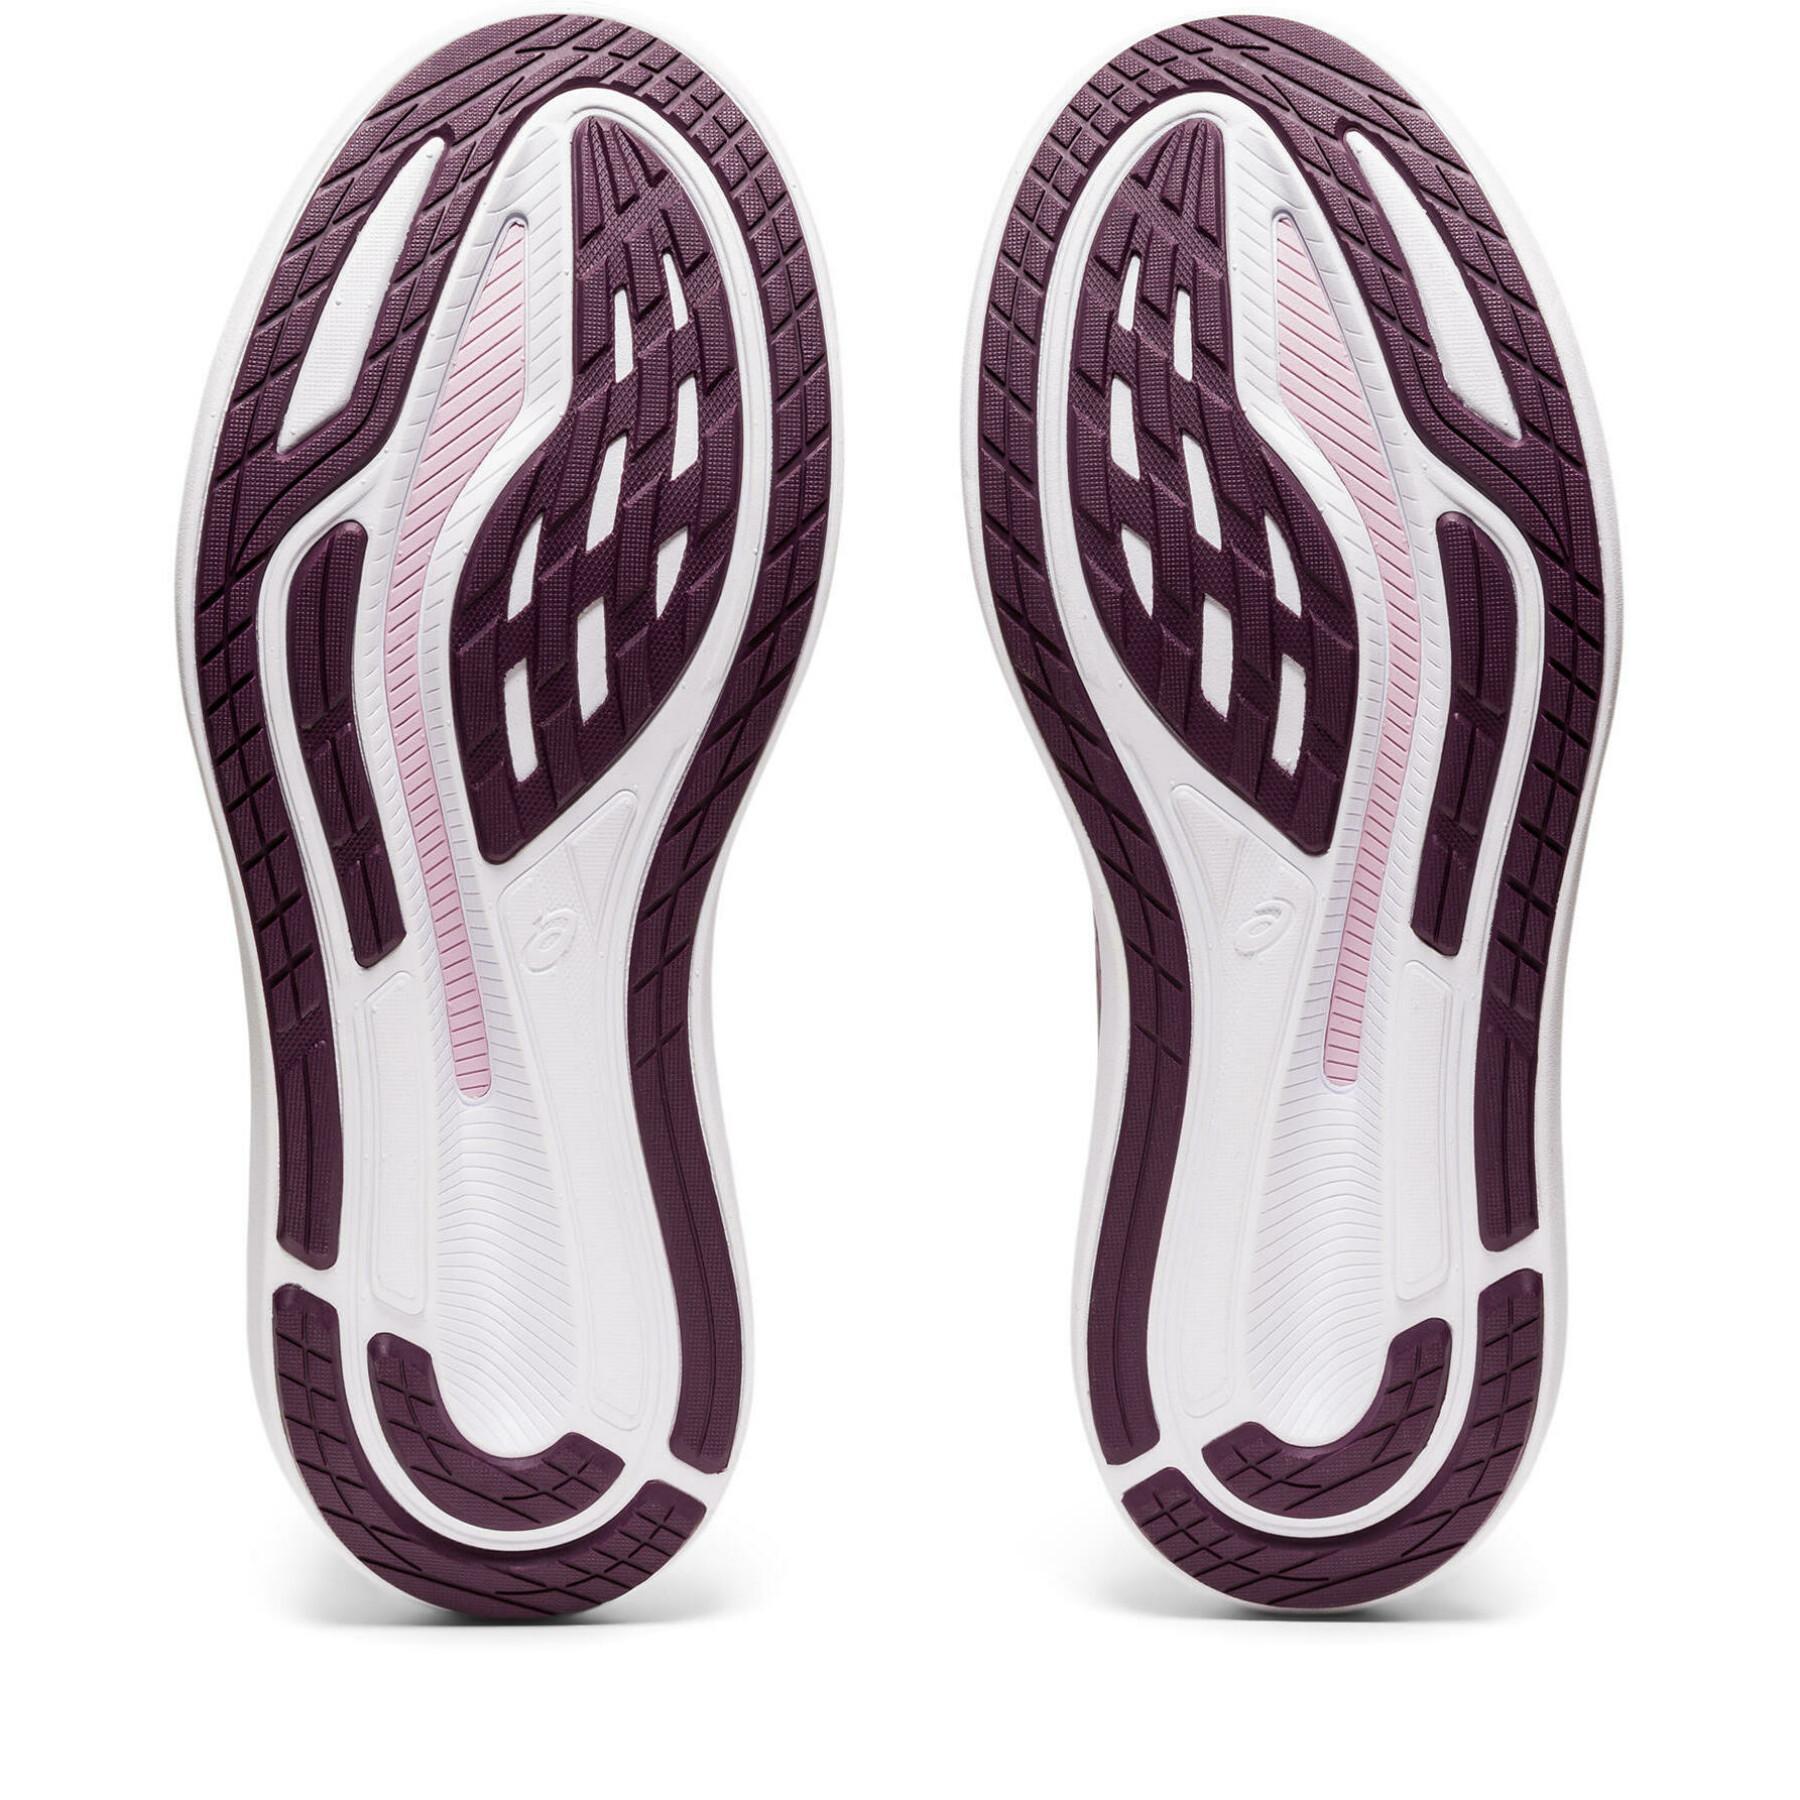 Chaussures de running femme Asics Glideride 3